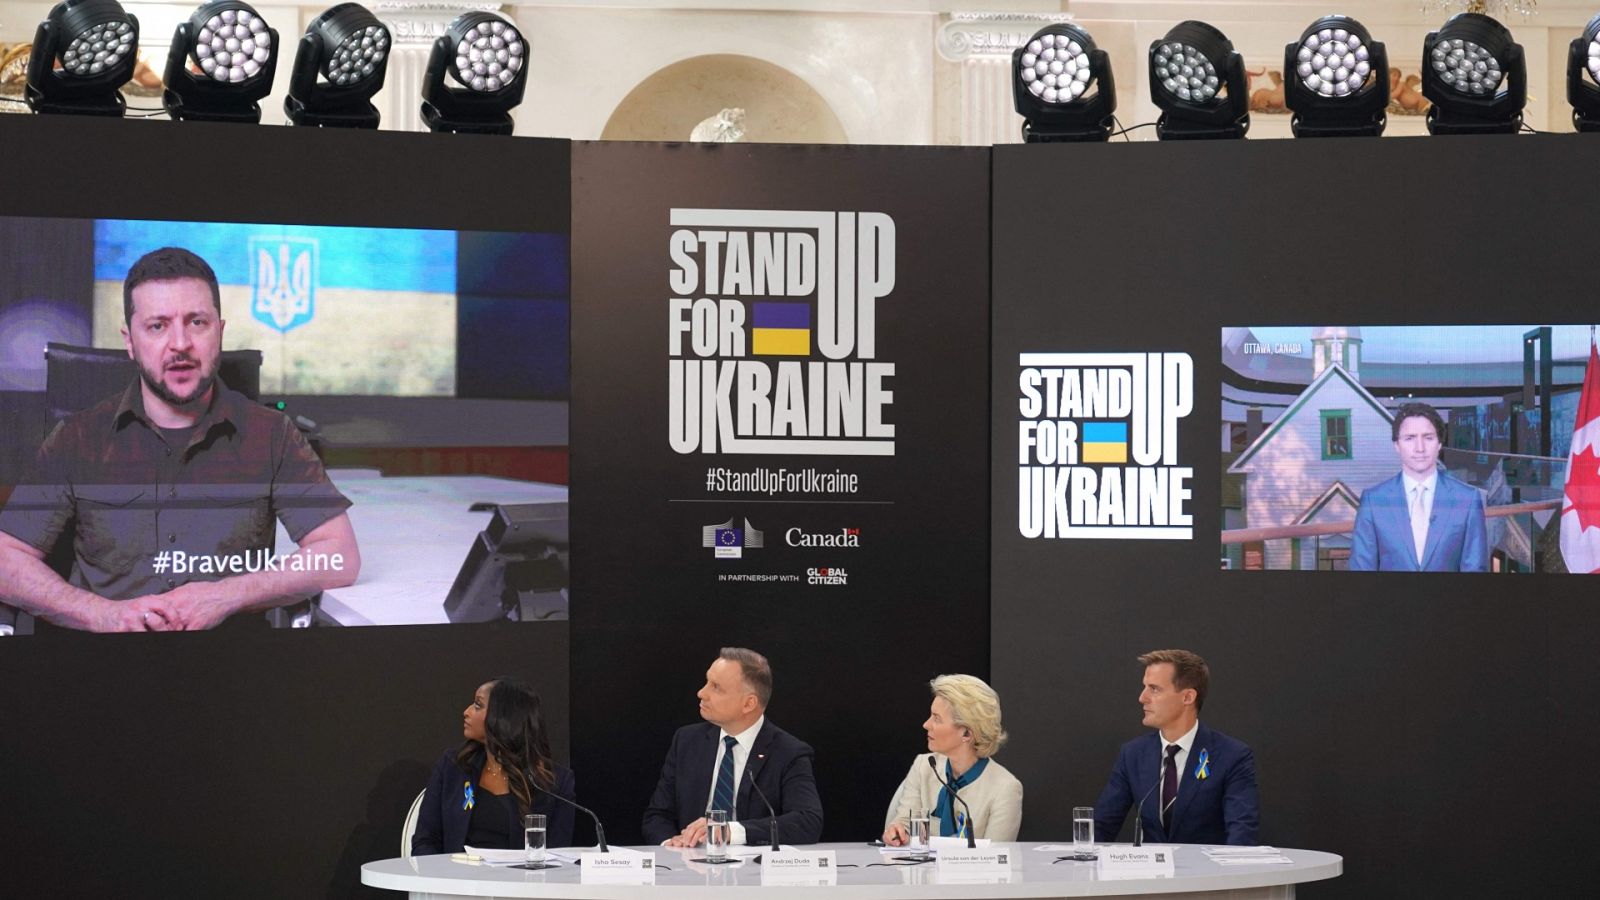 La campaña internacional 'Stand up for Ukraine' recauda más de 10.000 millones de euros